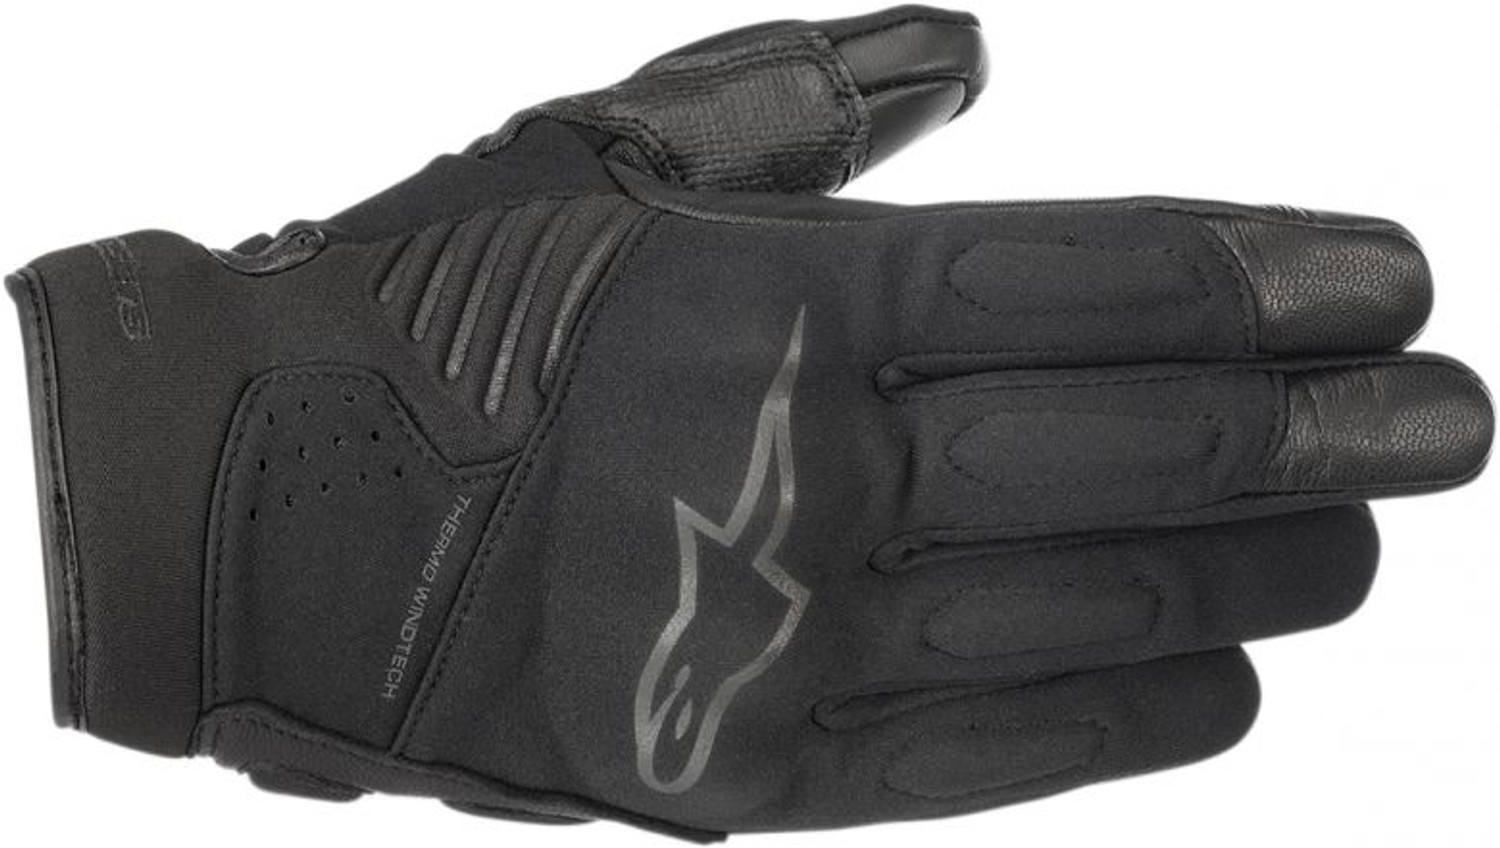 Alpinestars Windbreaker Gloves - by Rider Approved LLC